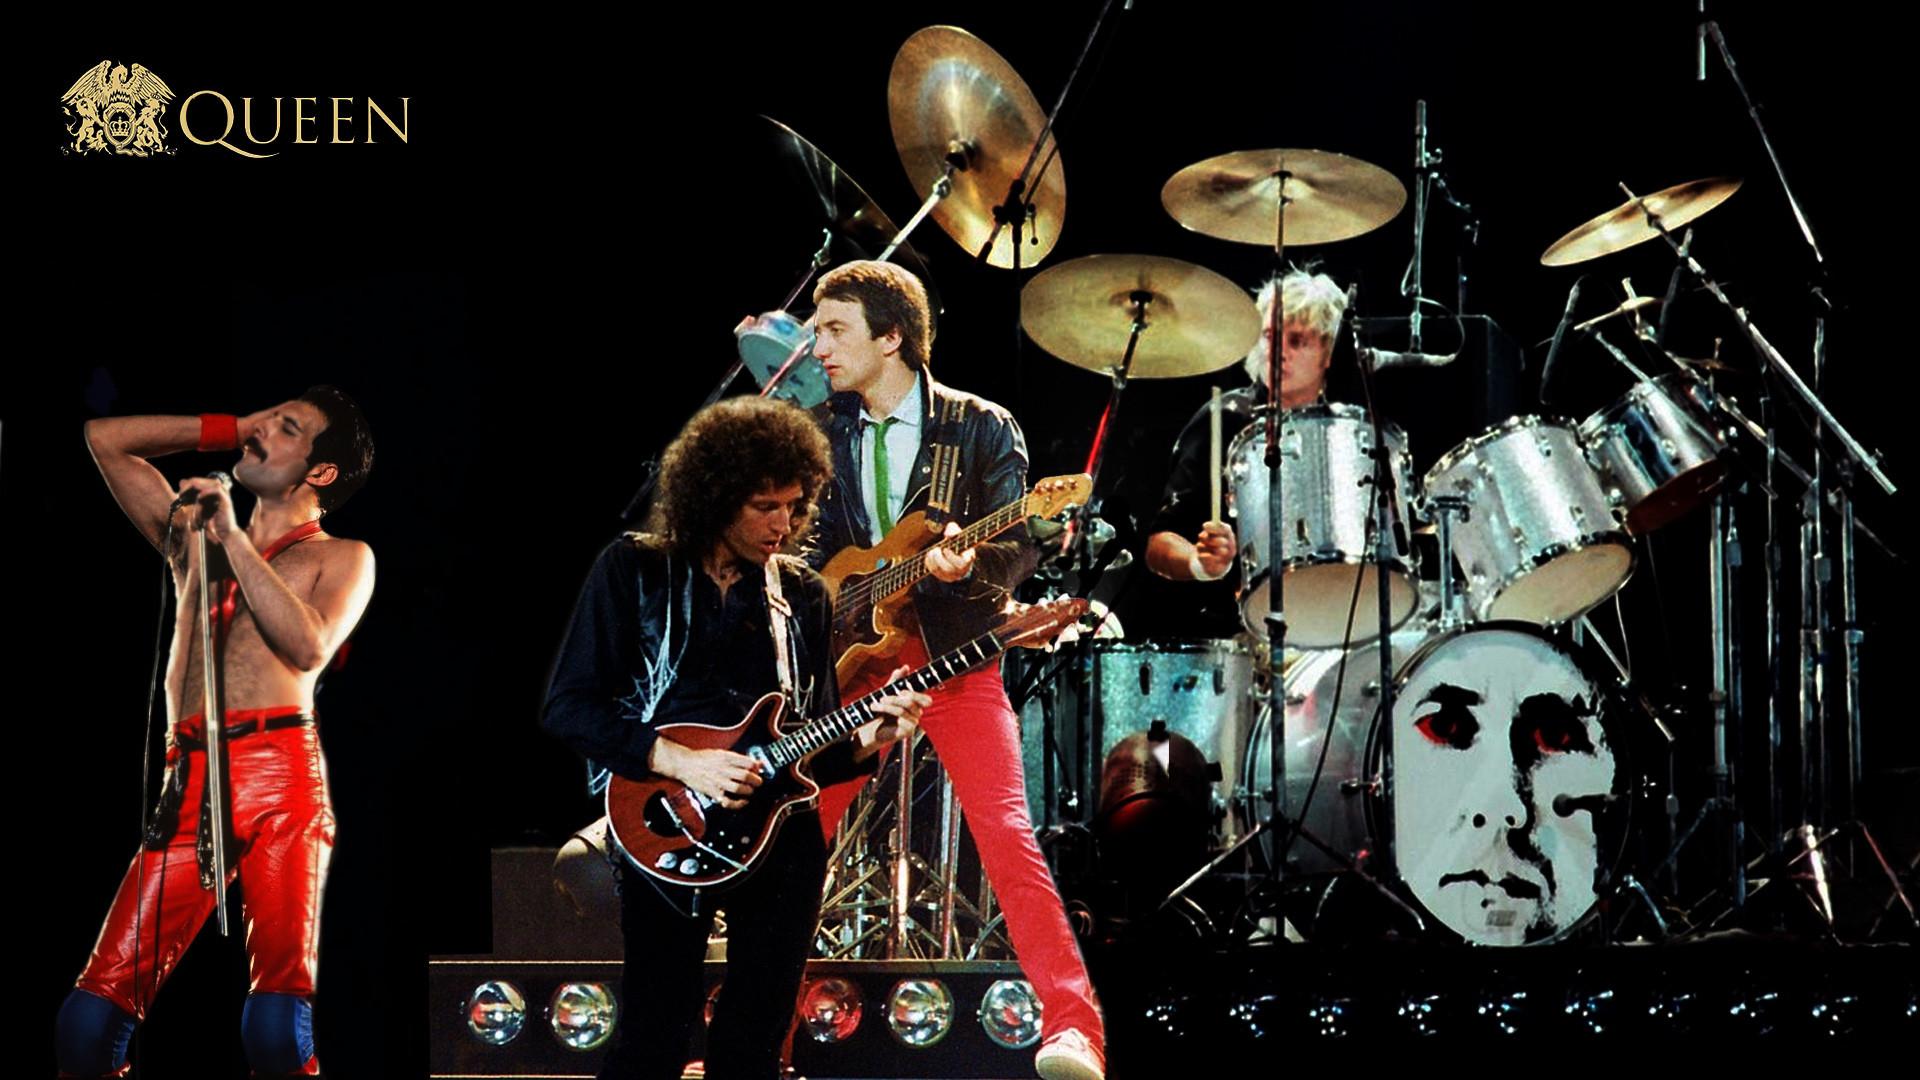 Queen Band Wallpaper Desktop background picture